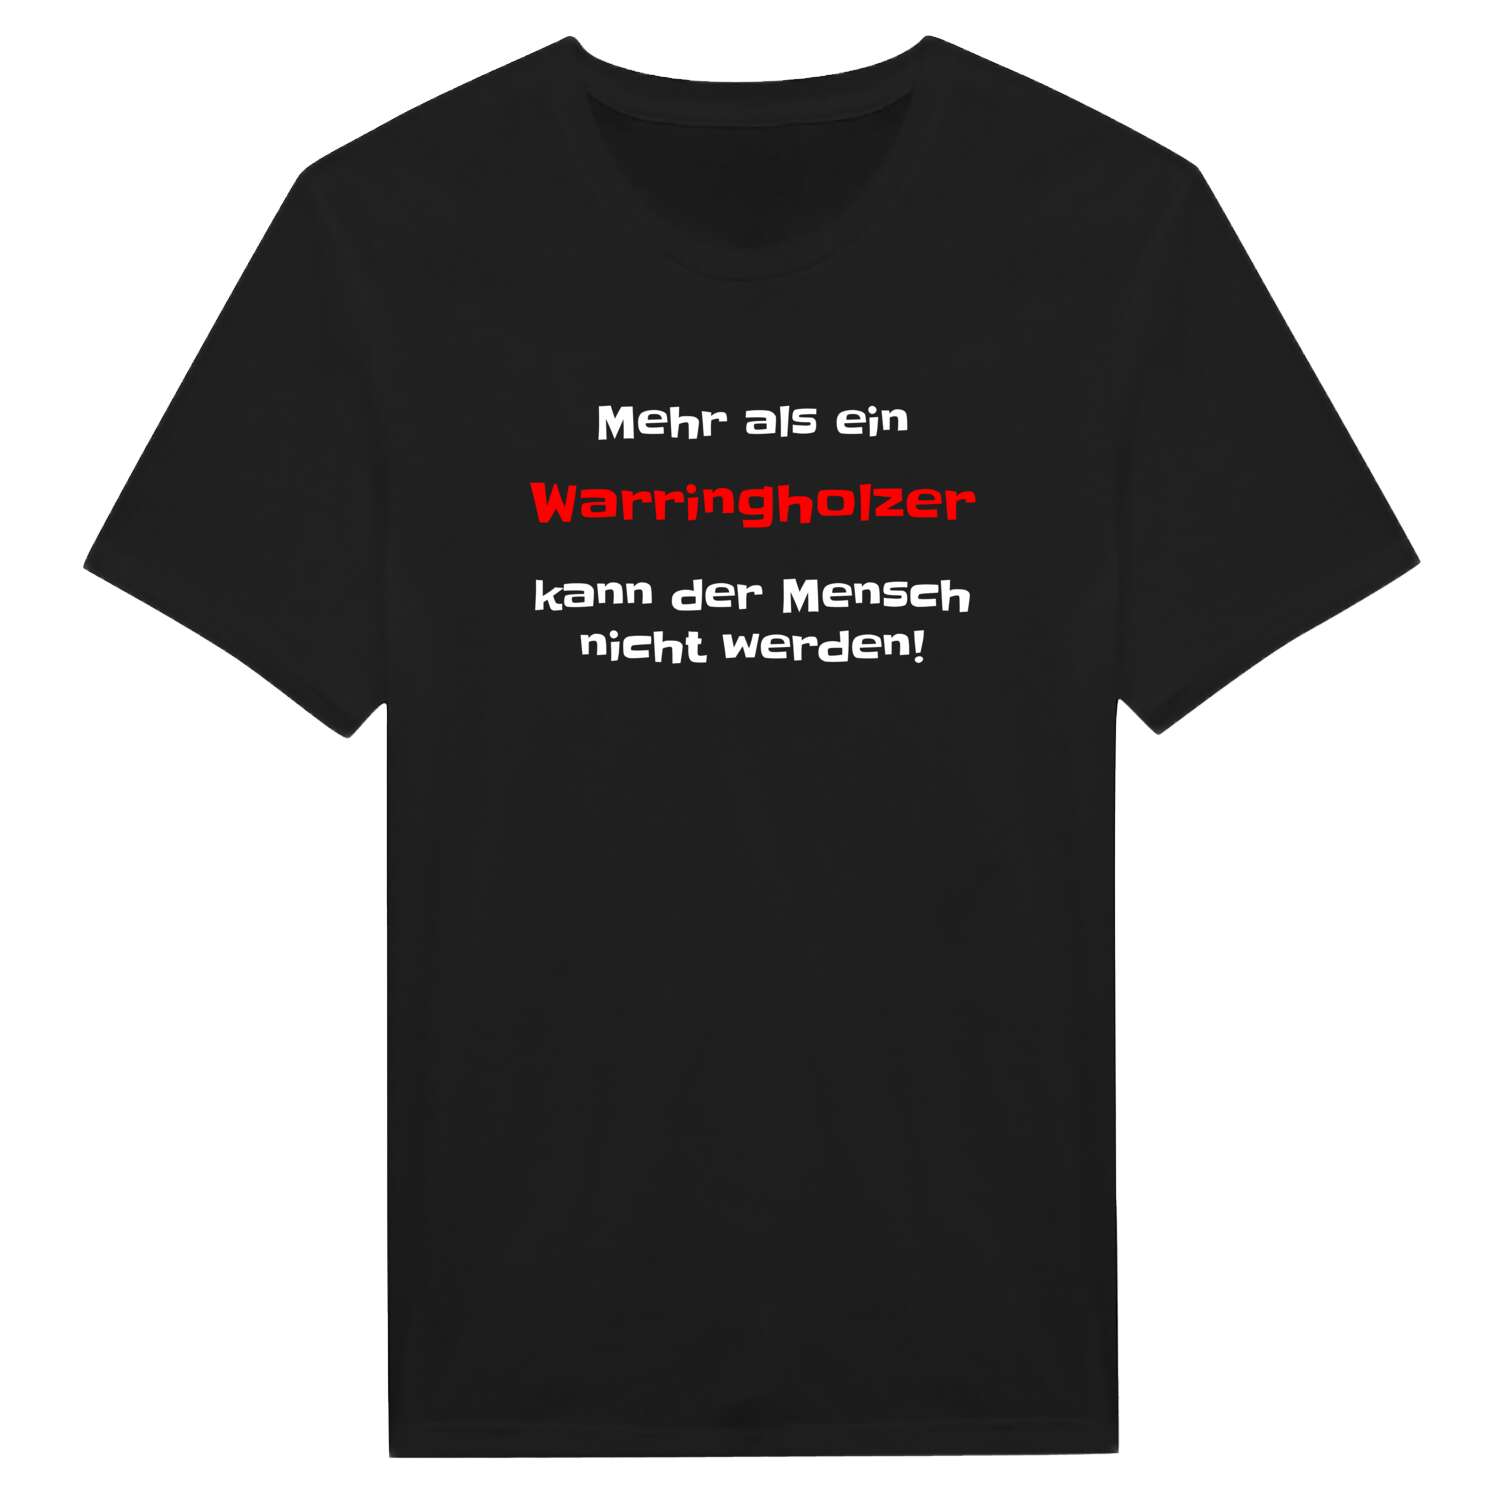 Warringholz T-Shirt »Mehr als ein«